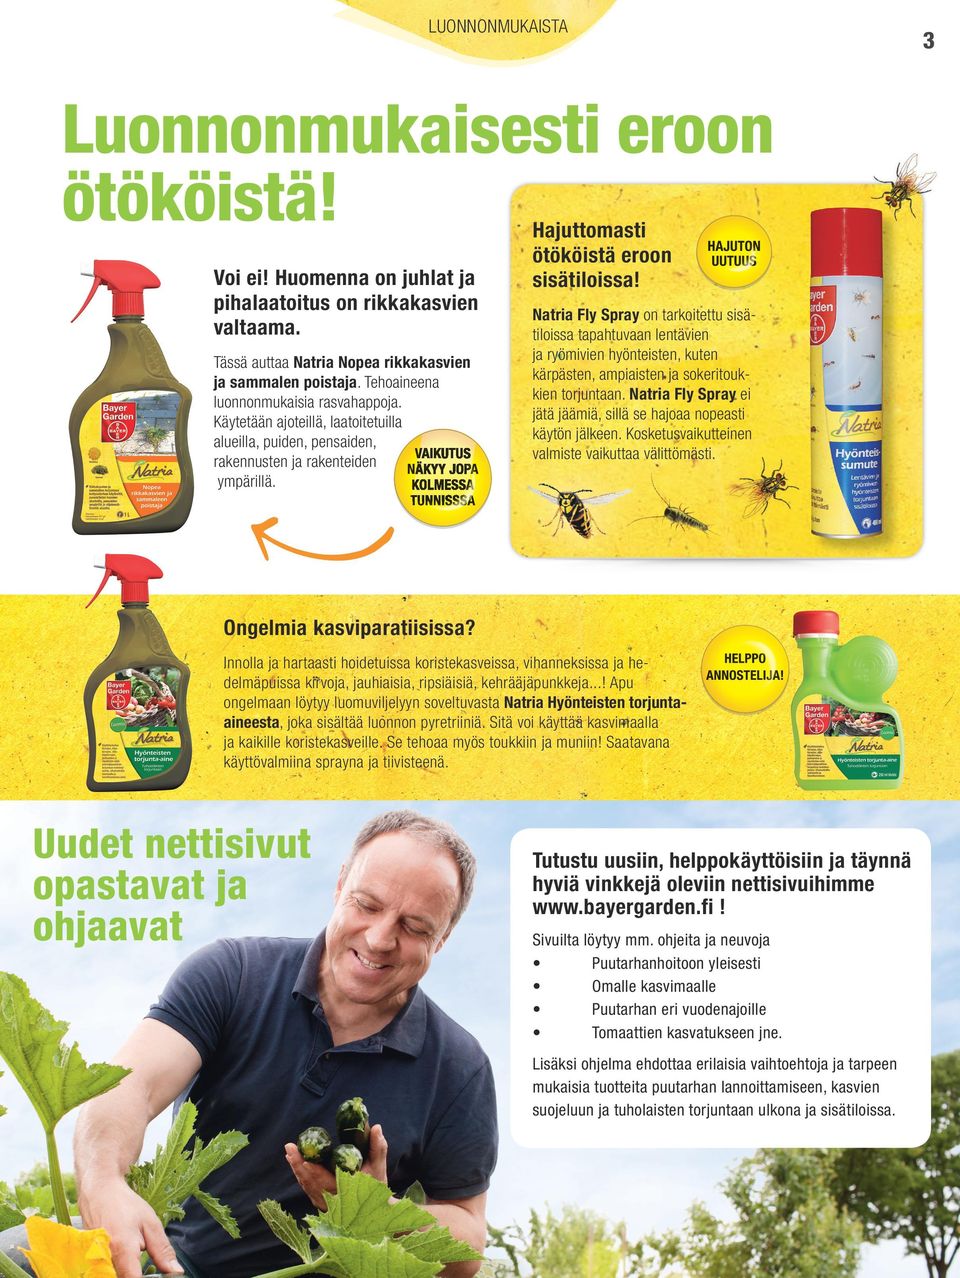 Natria Fly Spray on tarkoitettu sisätiloissa tapahtuvaan lentävien ja ryömivien hyönteisten, kuten kärpästen, ampiaisten ja sokeritoukkien torjuntaan.